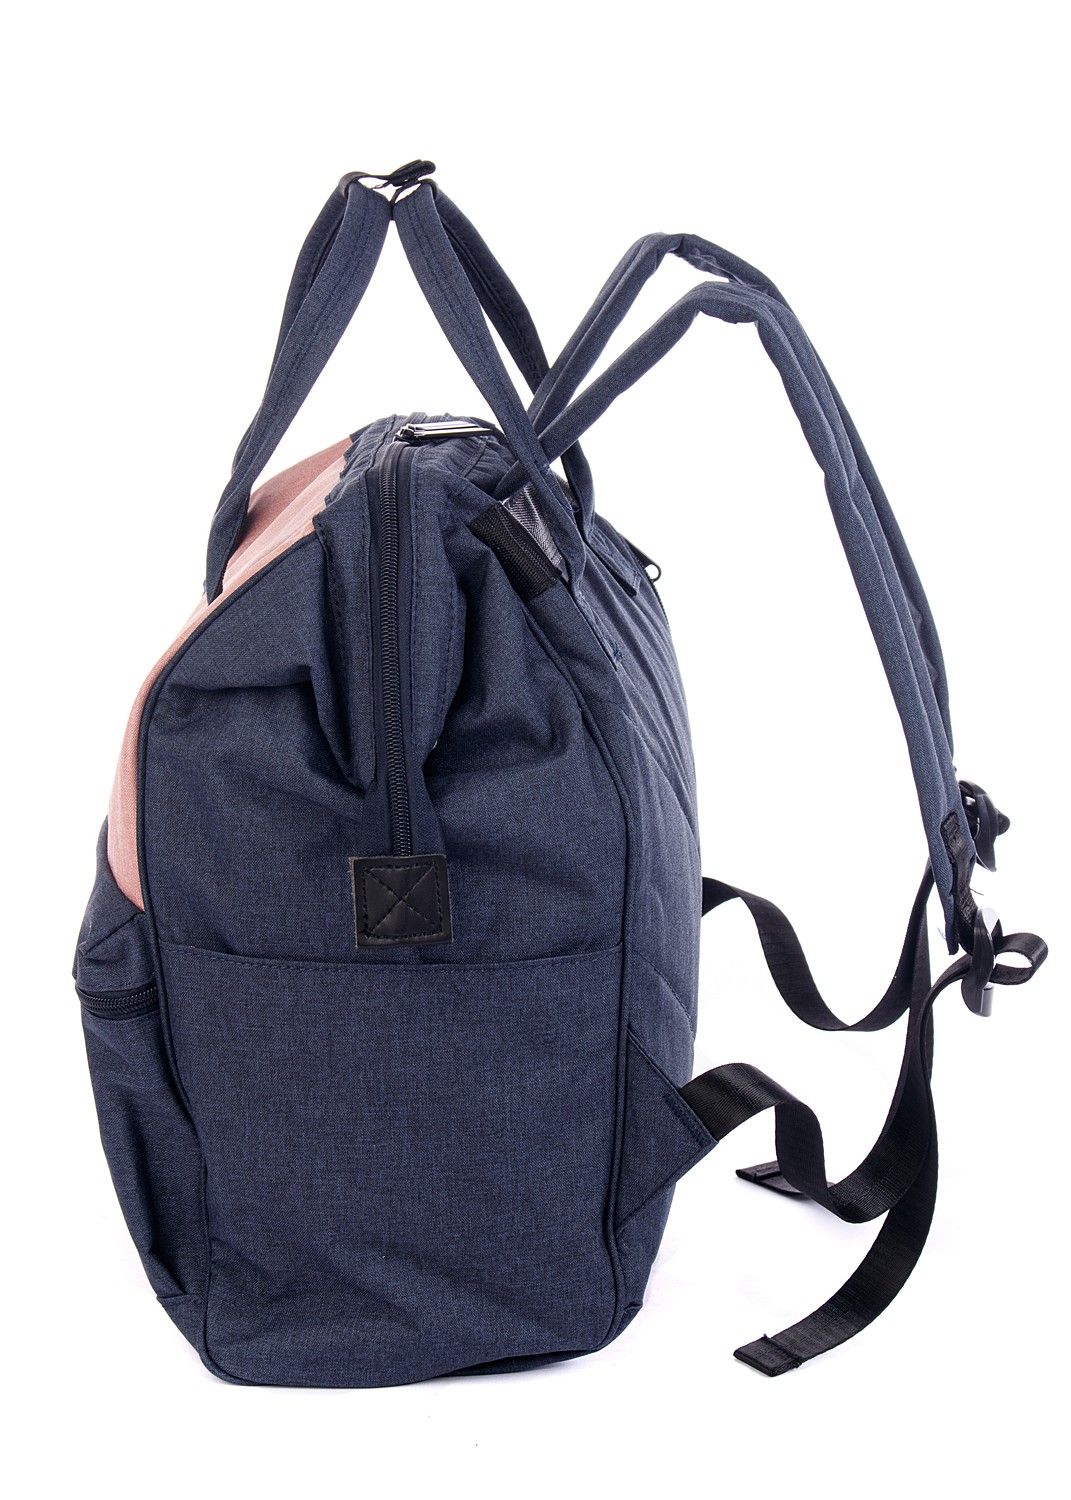 Рюкзак женский городской, темно-синий однотонный, со стандартными лямками, объем 18 л